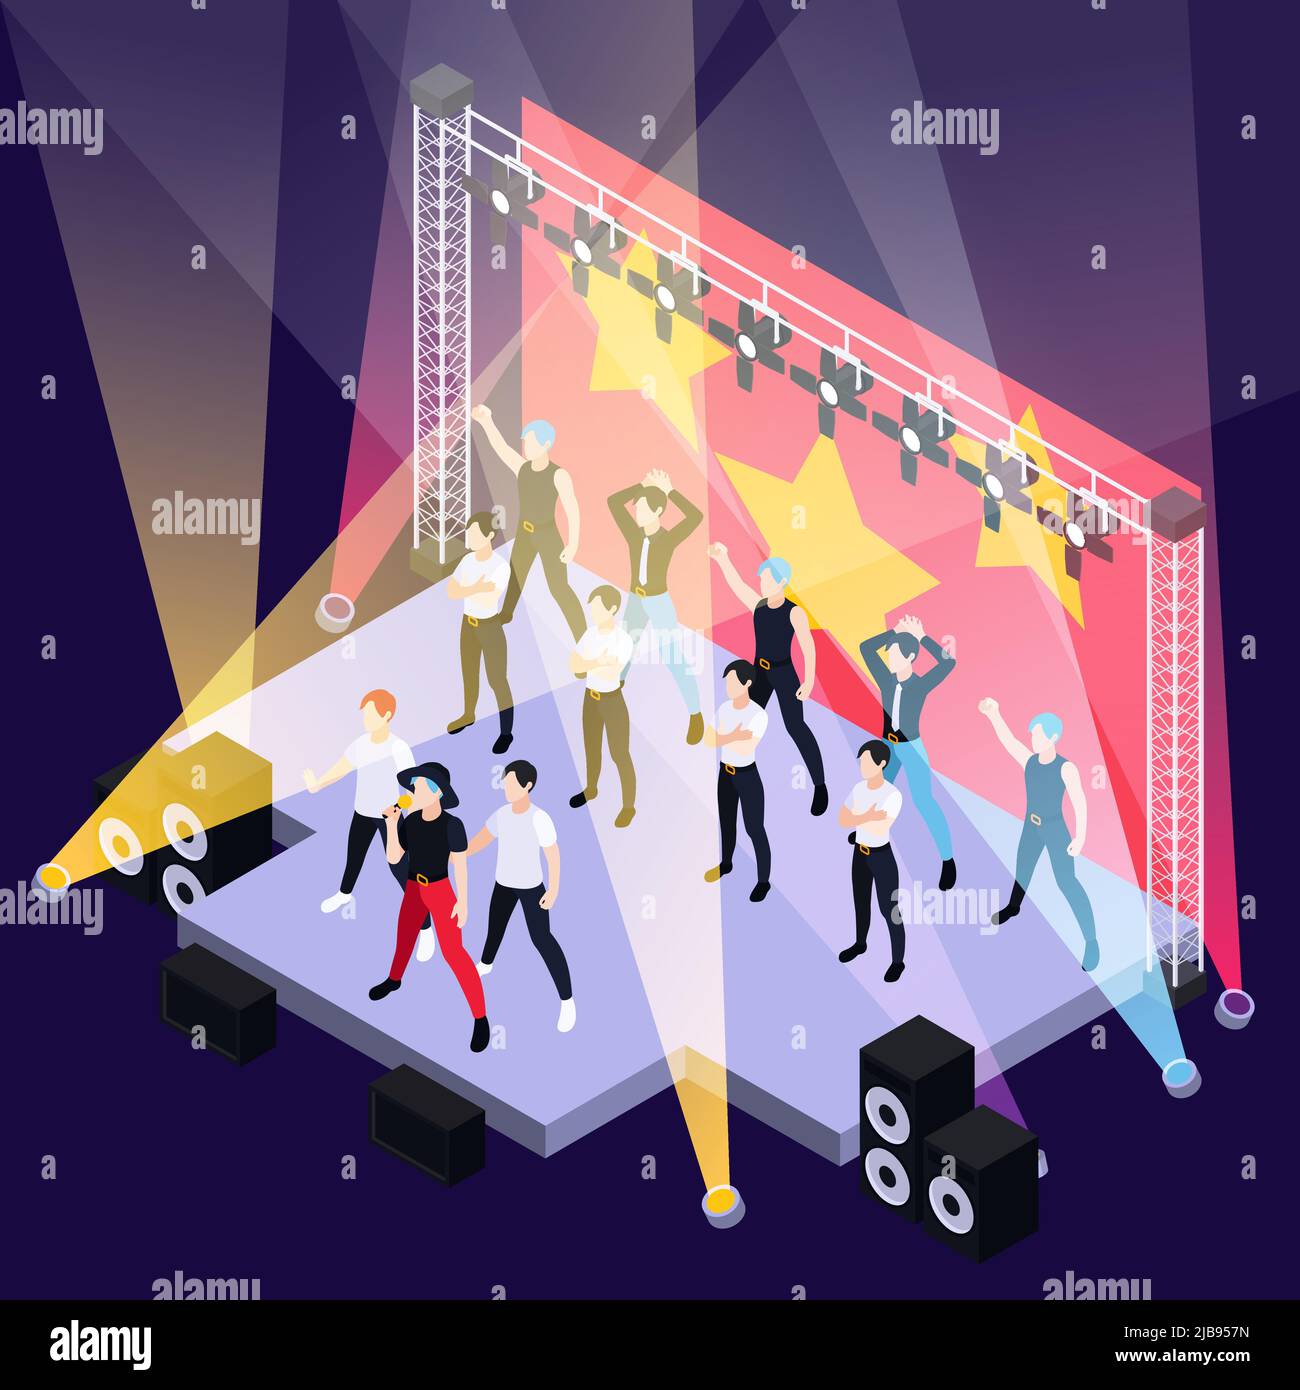 K musique pop garçons groupe chant et danse sur scène extérieure illustration vectorielle isométrique de fond Illustration de Vecteur